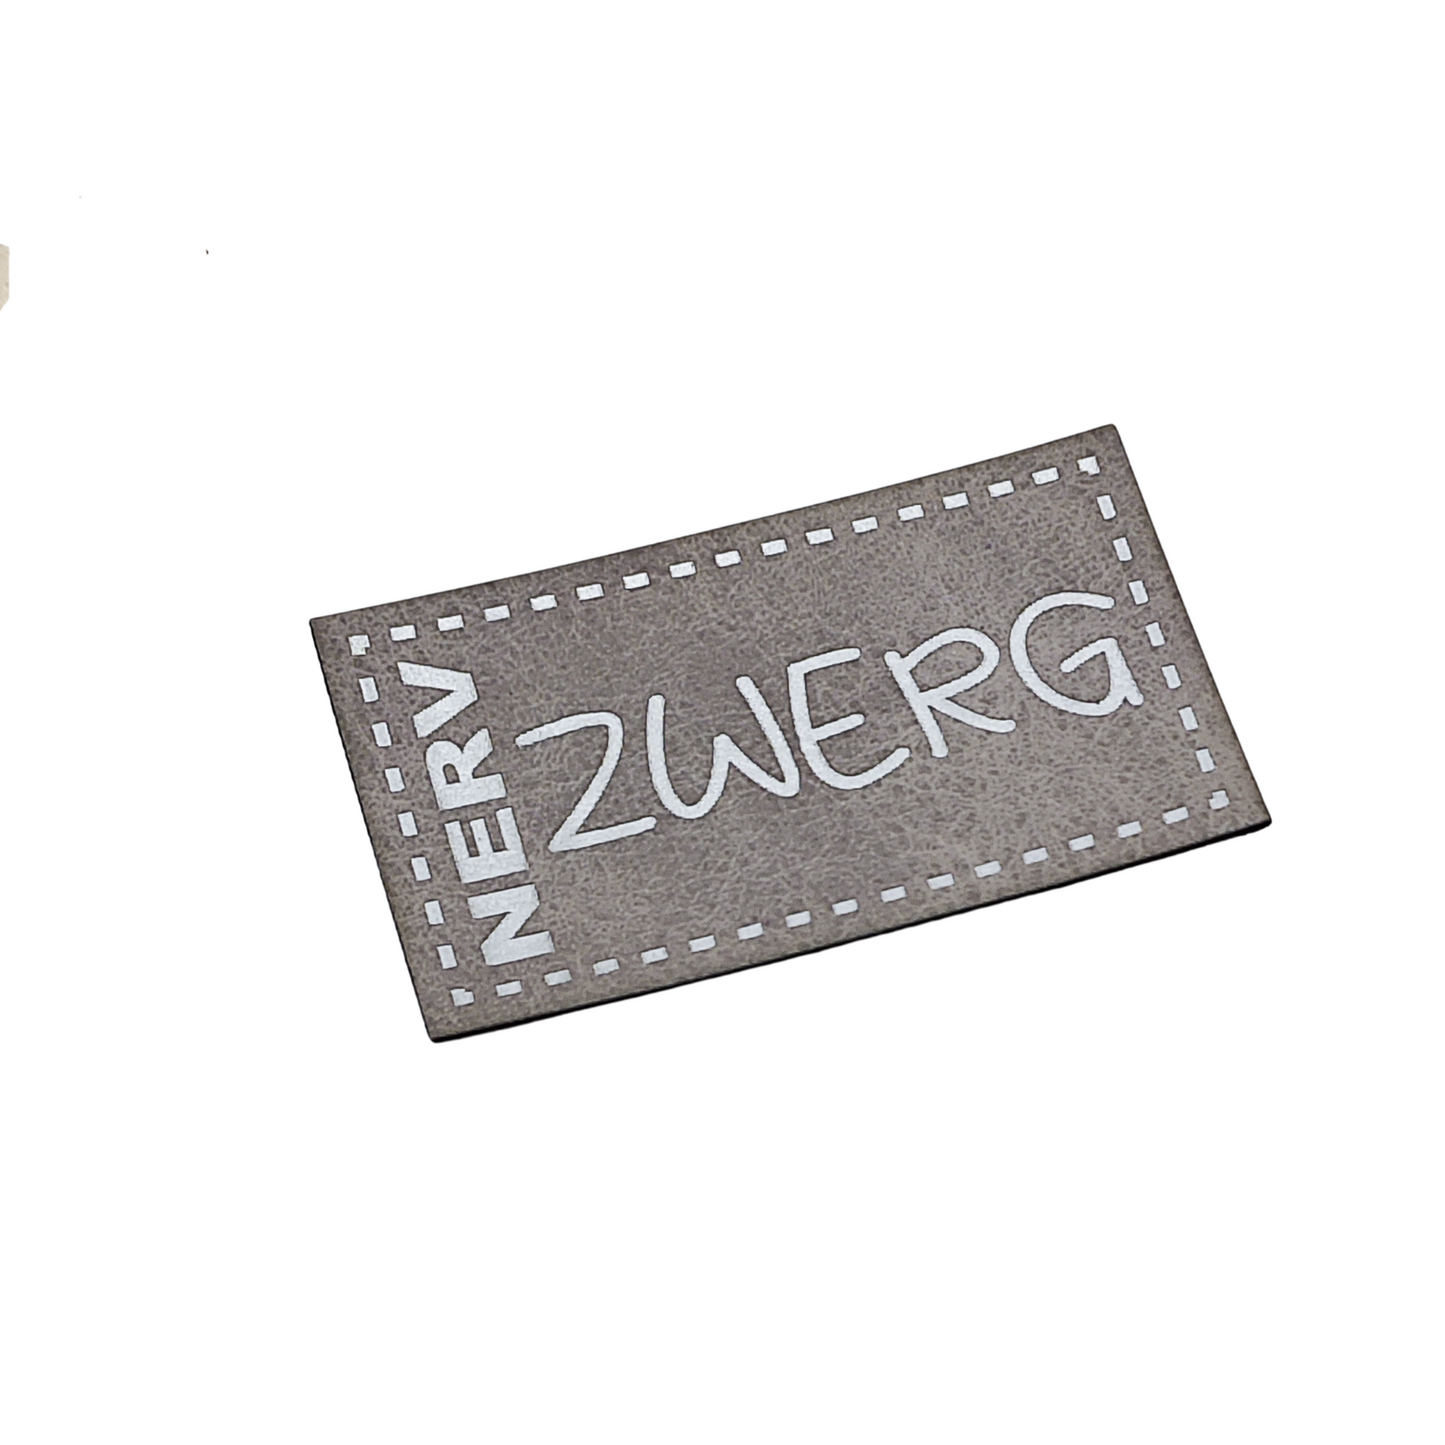 Aufnäher Label CRAZY "NERV ZWERG" grau aus Kunstleder